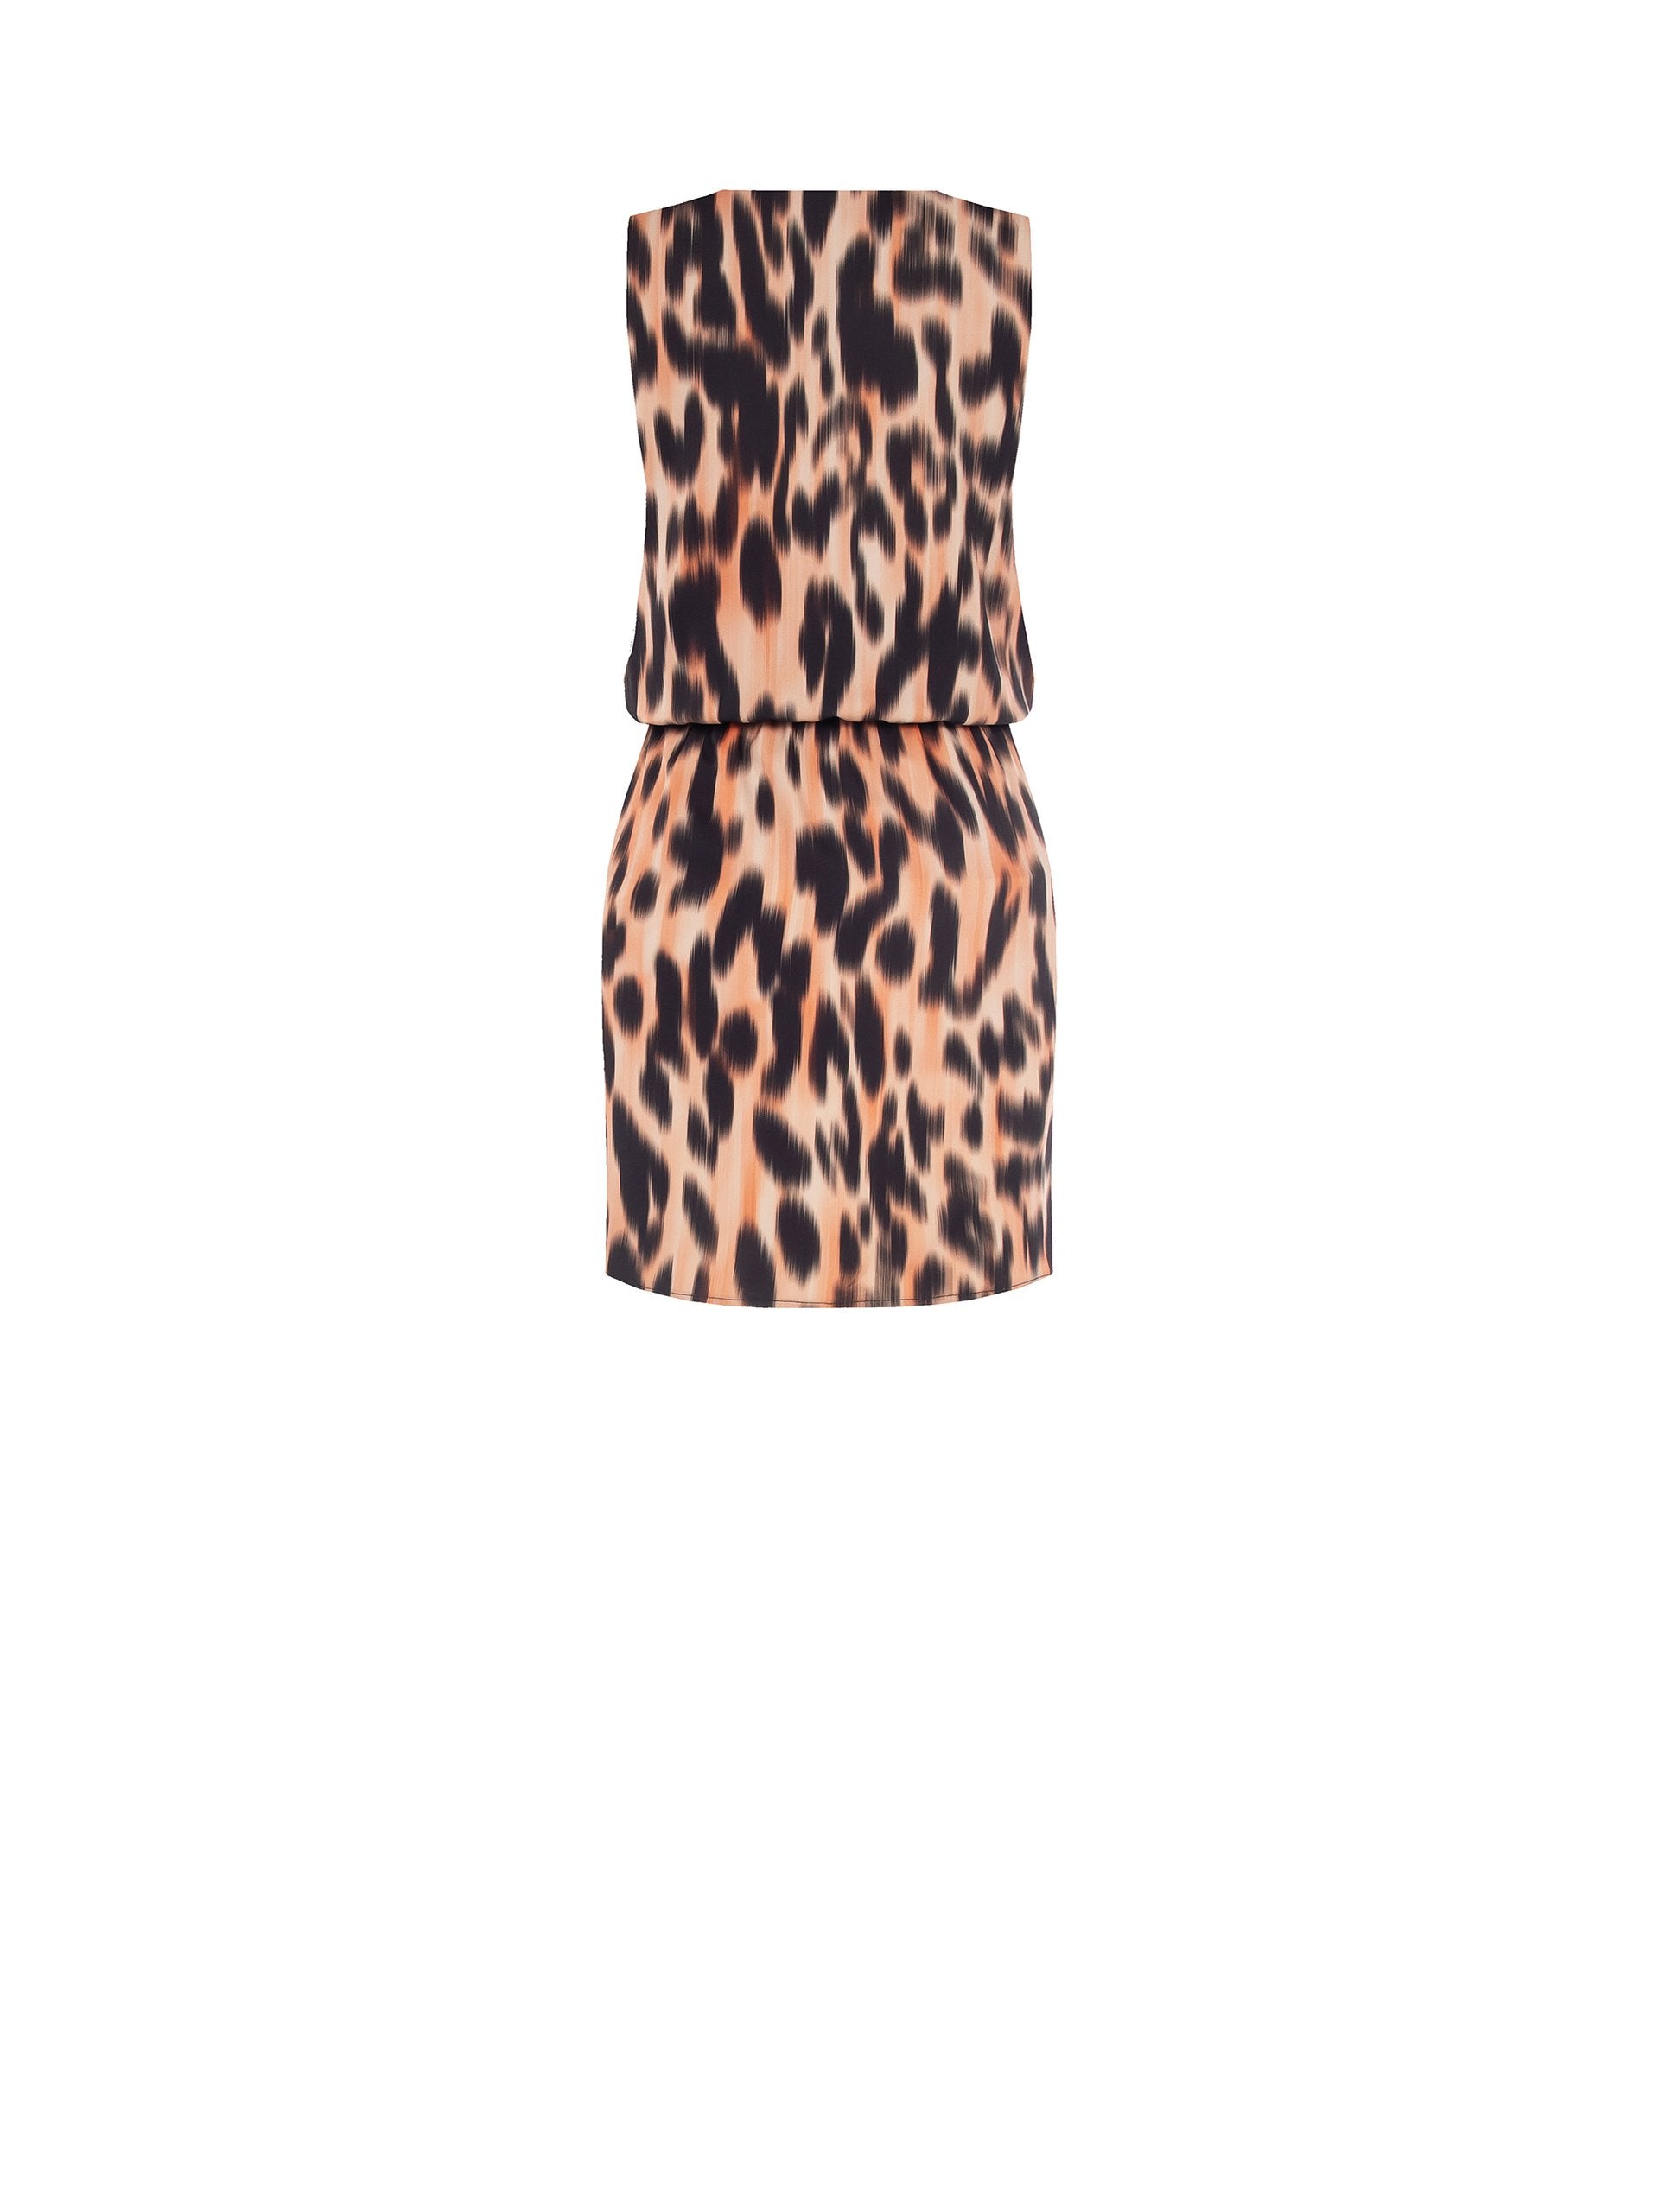 SERENA Leopard Print Short Dress